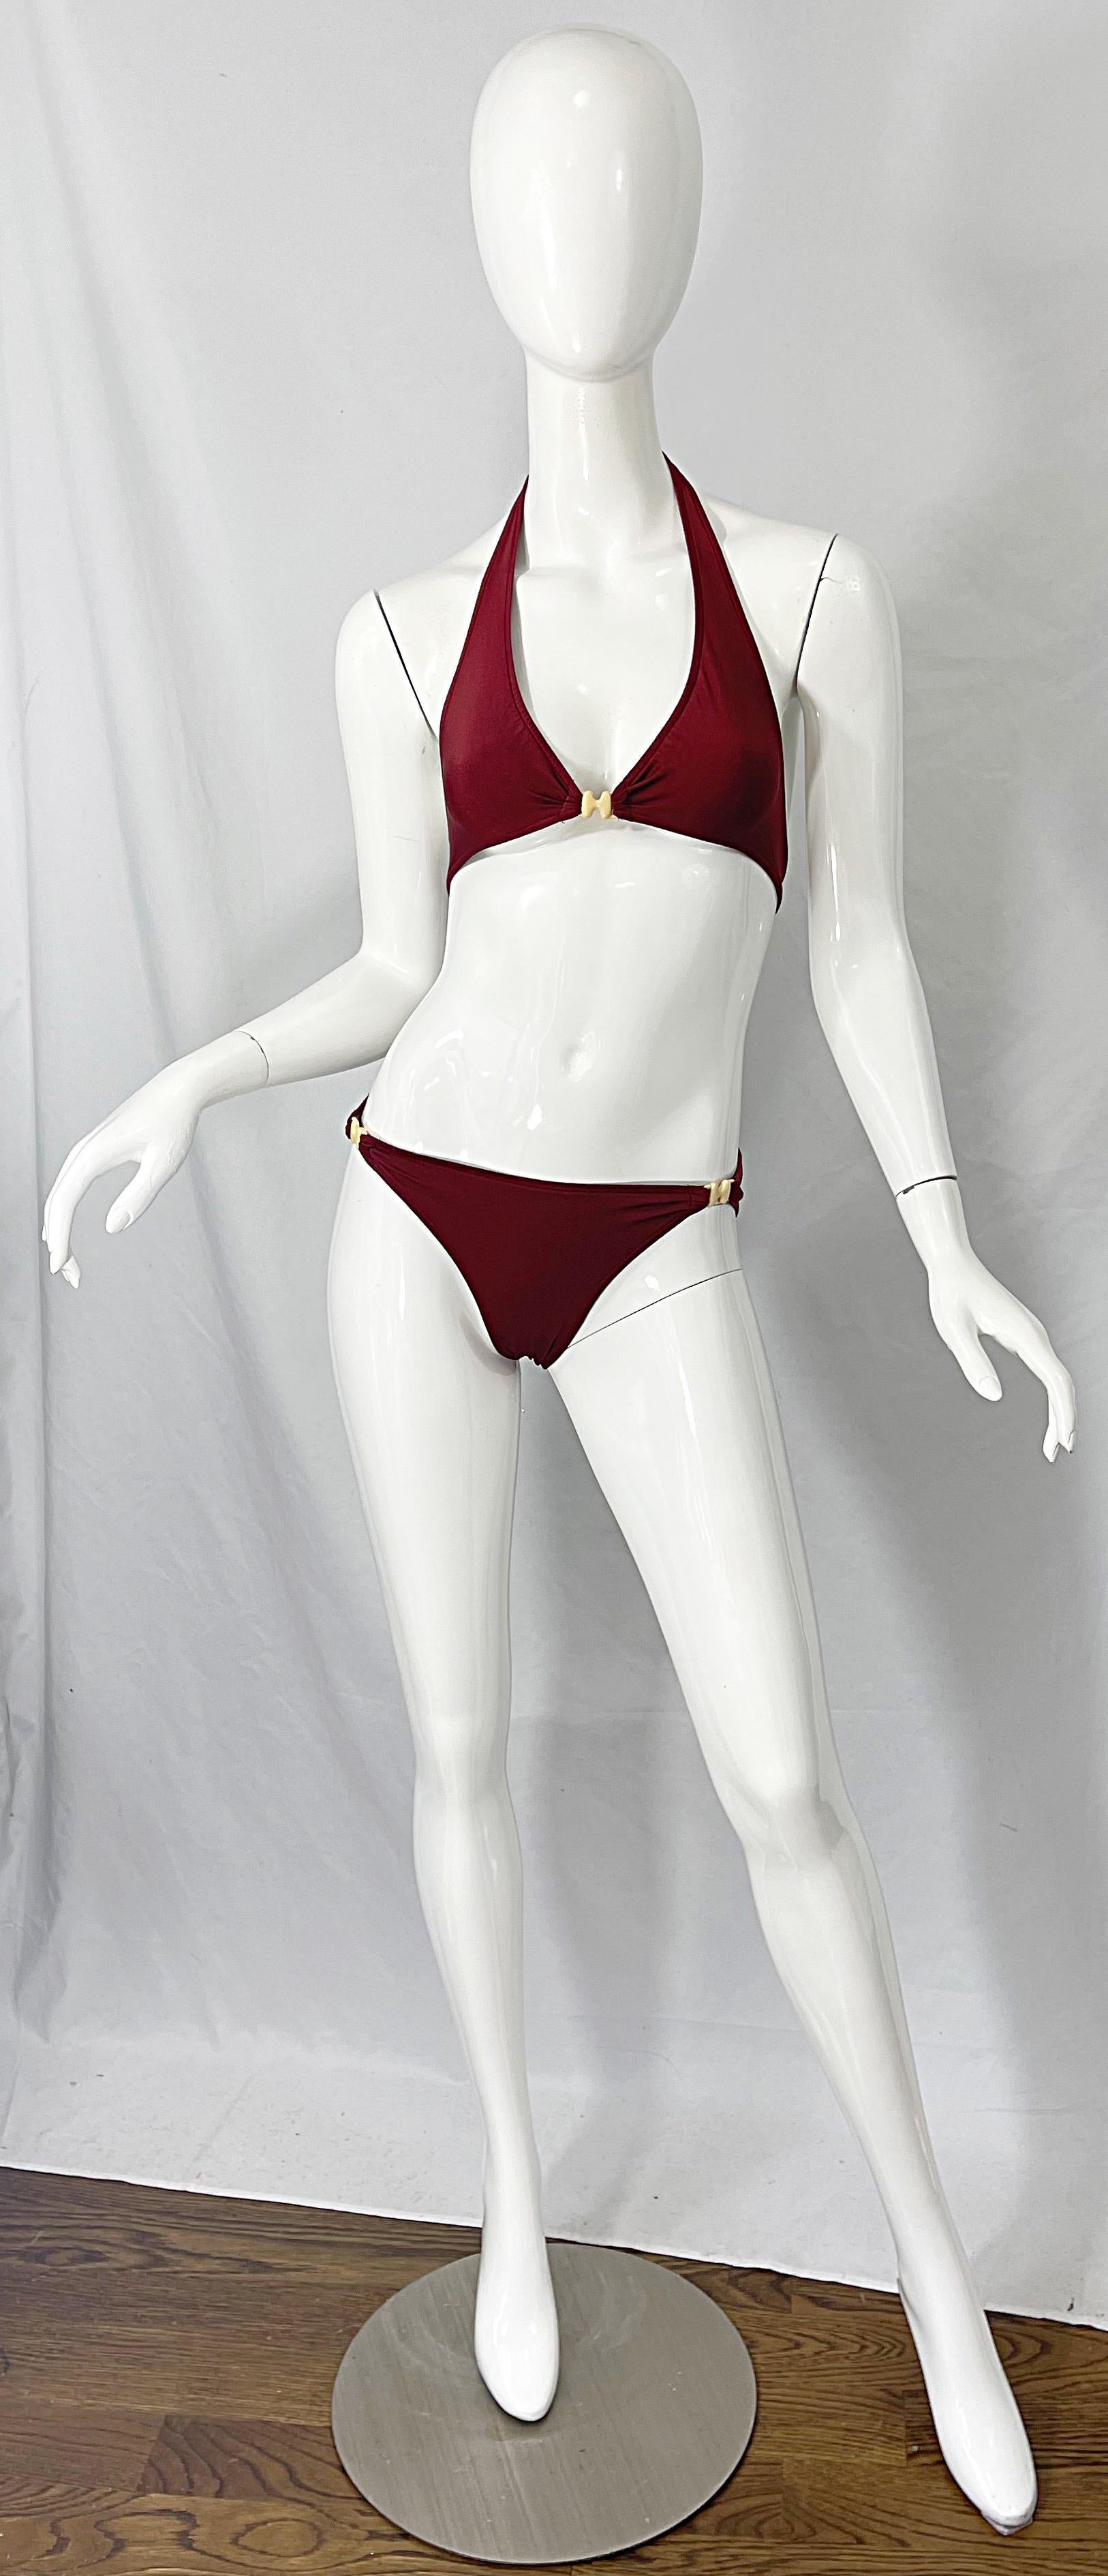 Ein weiterer 1970er HALSTON braun / rostigen zweiteiligen Bikini-Badeanzug ! Dies ist einer von fünf Badeanzügen, die ein Halstonette-Model selbst entworfen hat. Elfenbeinfarbene Lucit-Schnallen in der charakteristischen H-Form. Bindungen im Rücken.